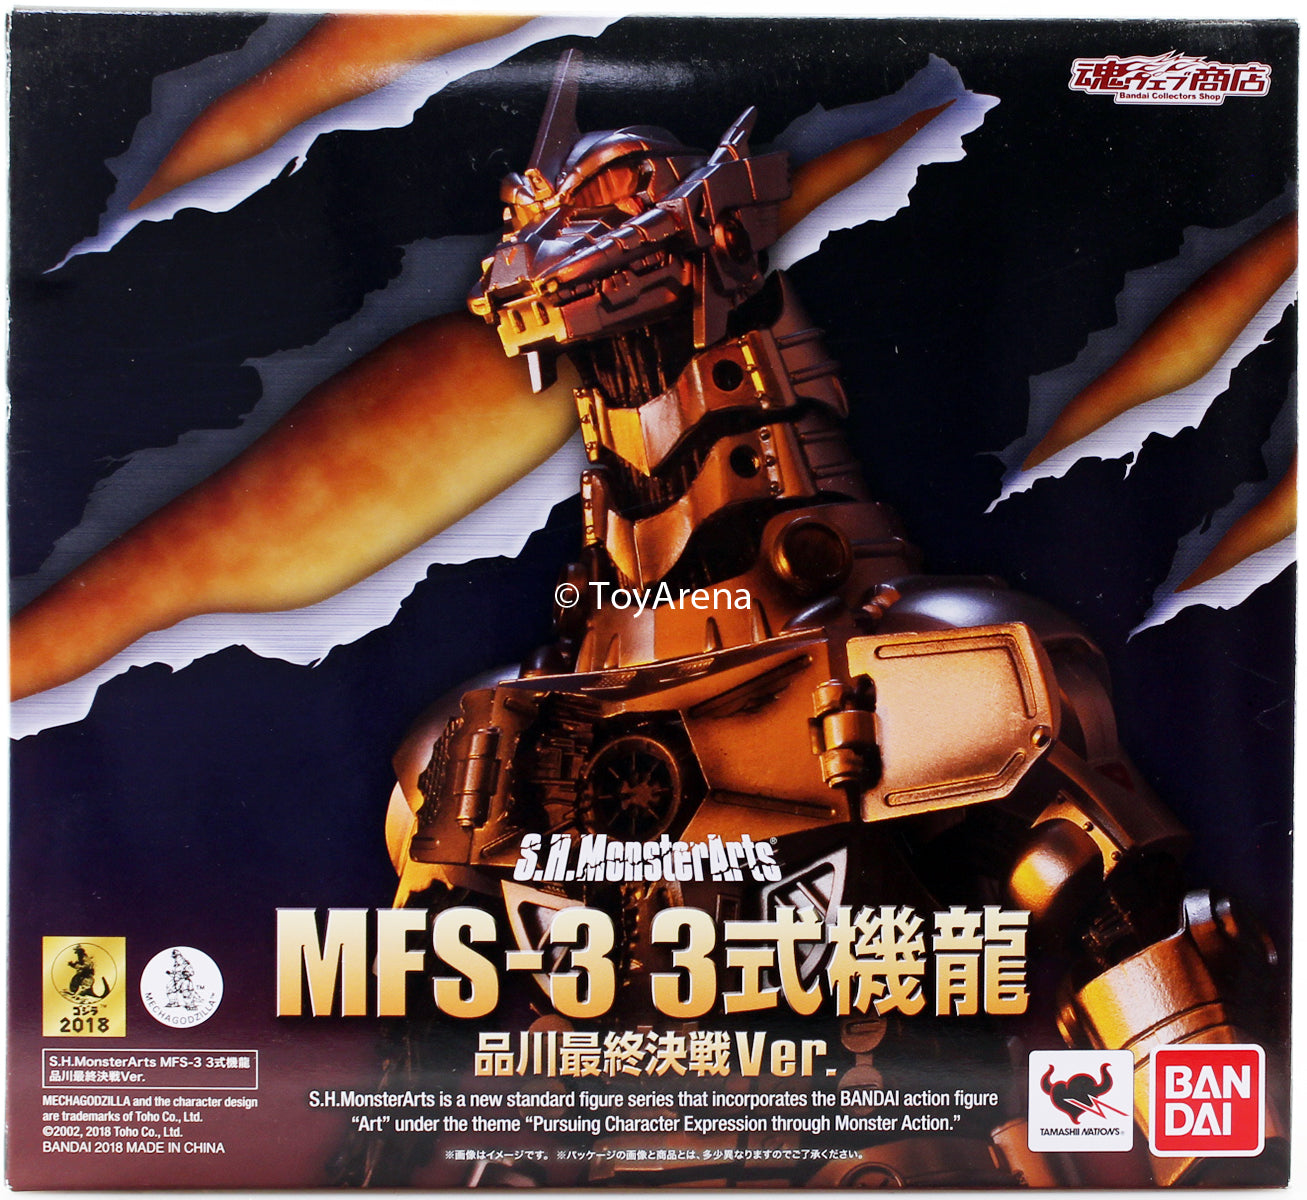 S.H. Monsterarts MFS-3 Mechagodzilla Type-3 "Kiryu" (Shinagawa Final Battle Ver.) Action Figure